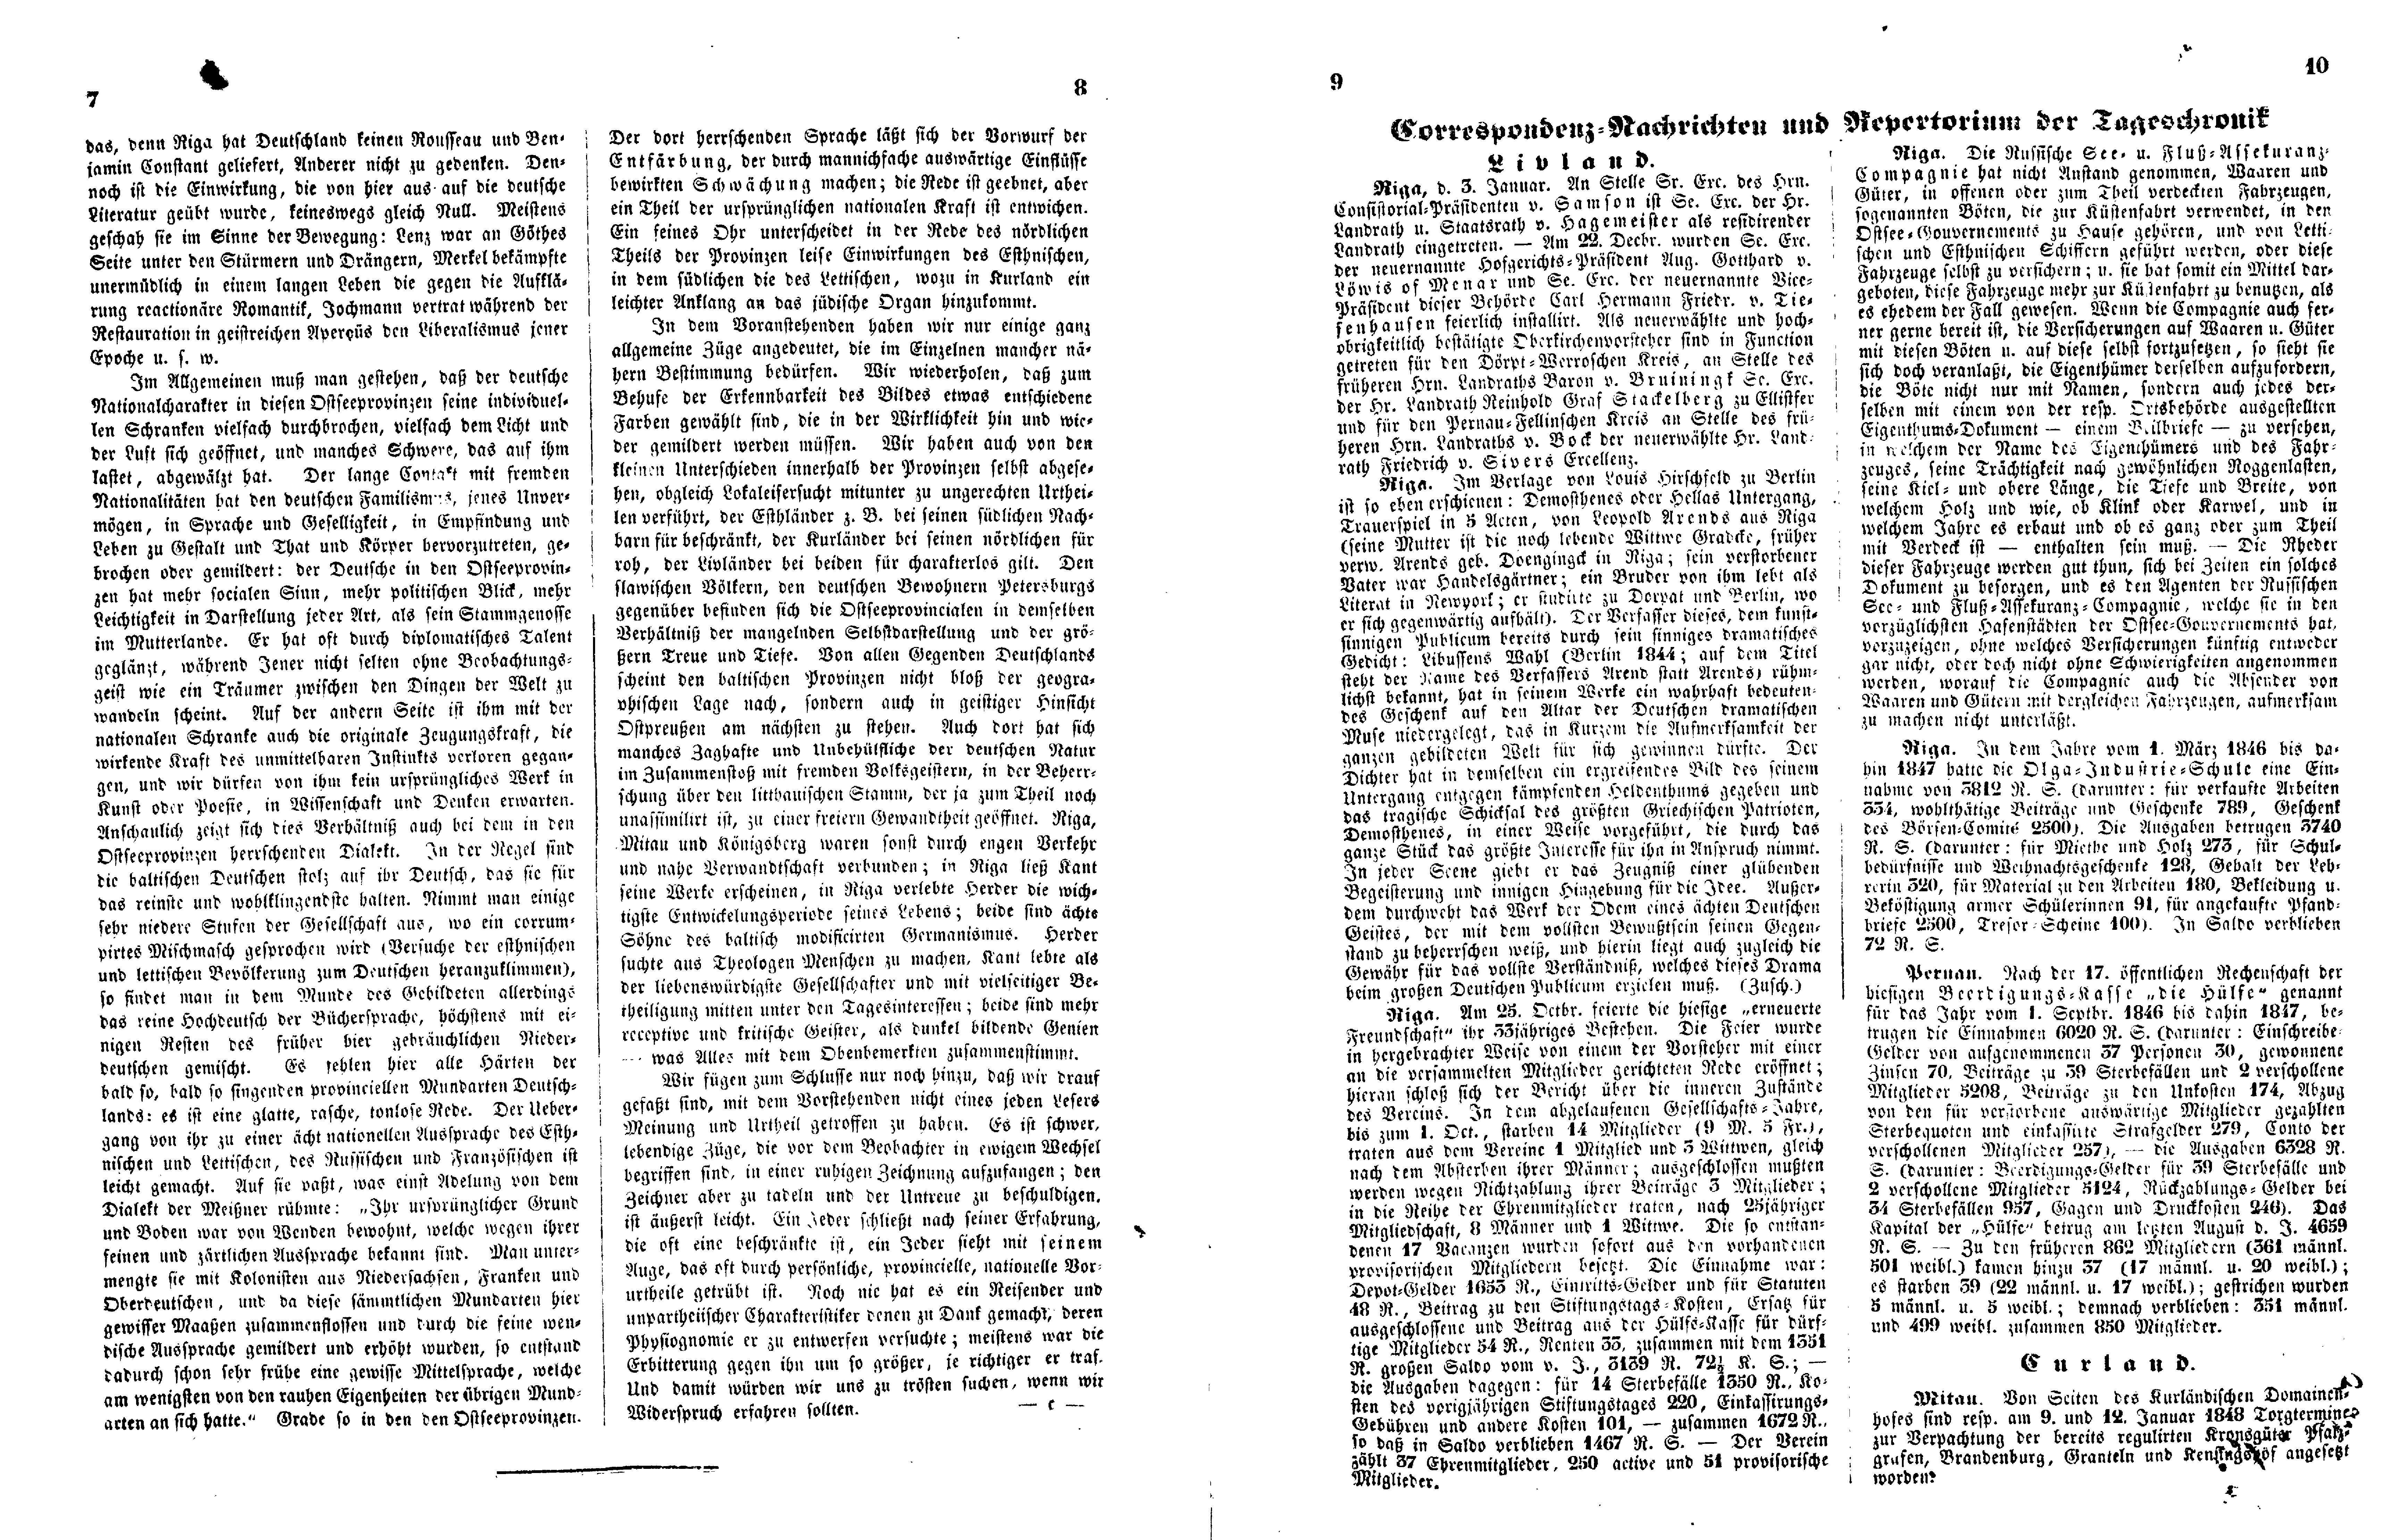 Das Inland [13] (1848) | 7. (7-10) Основной текст